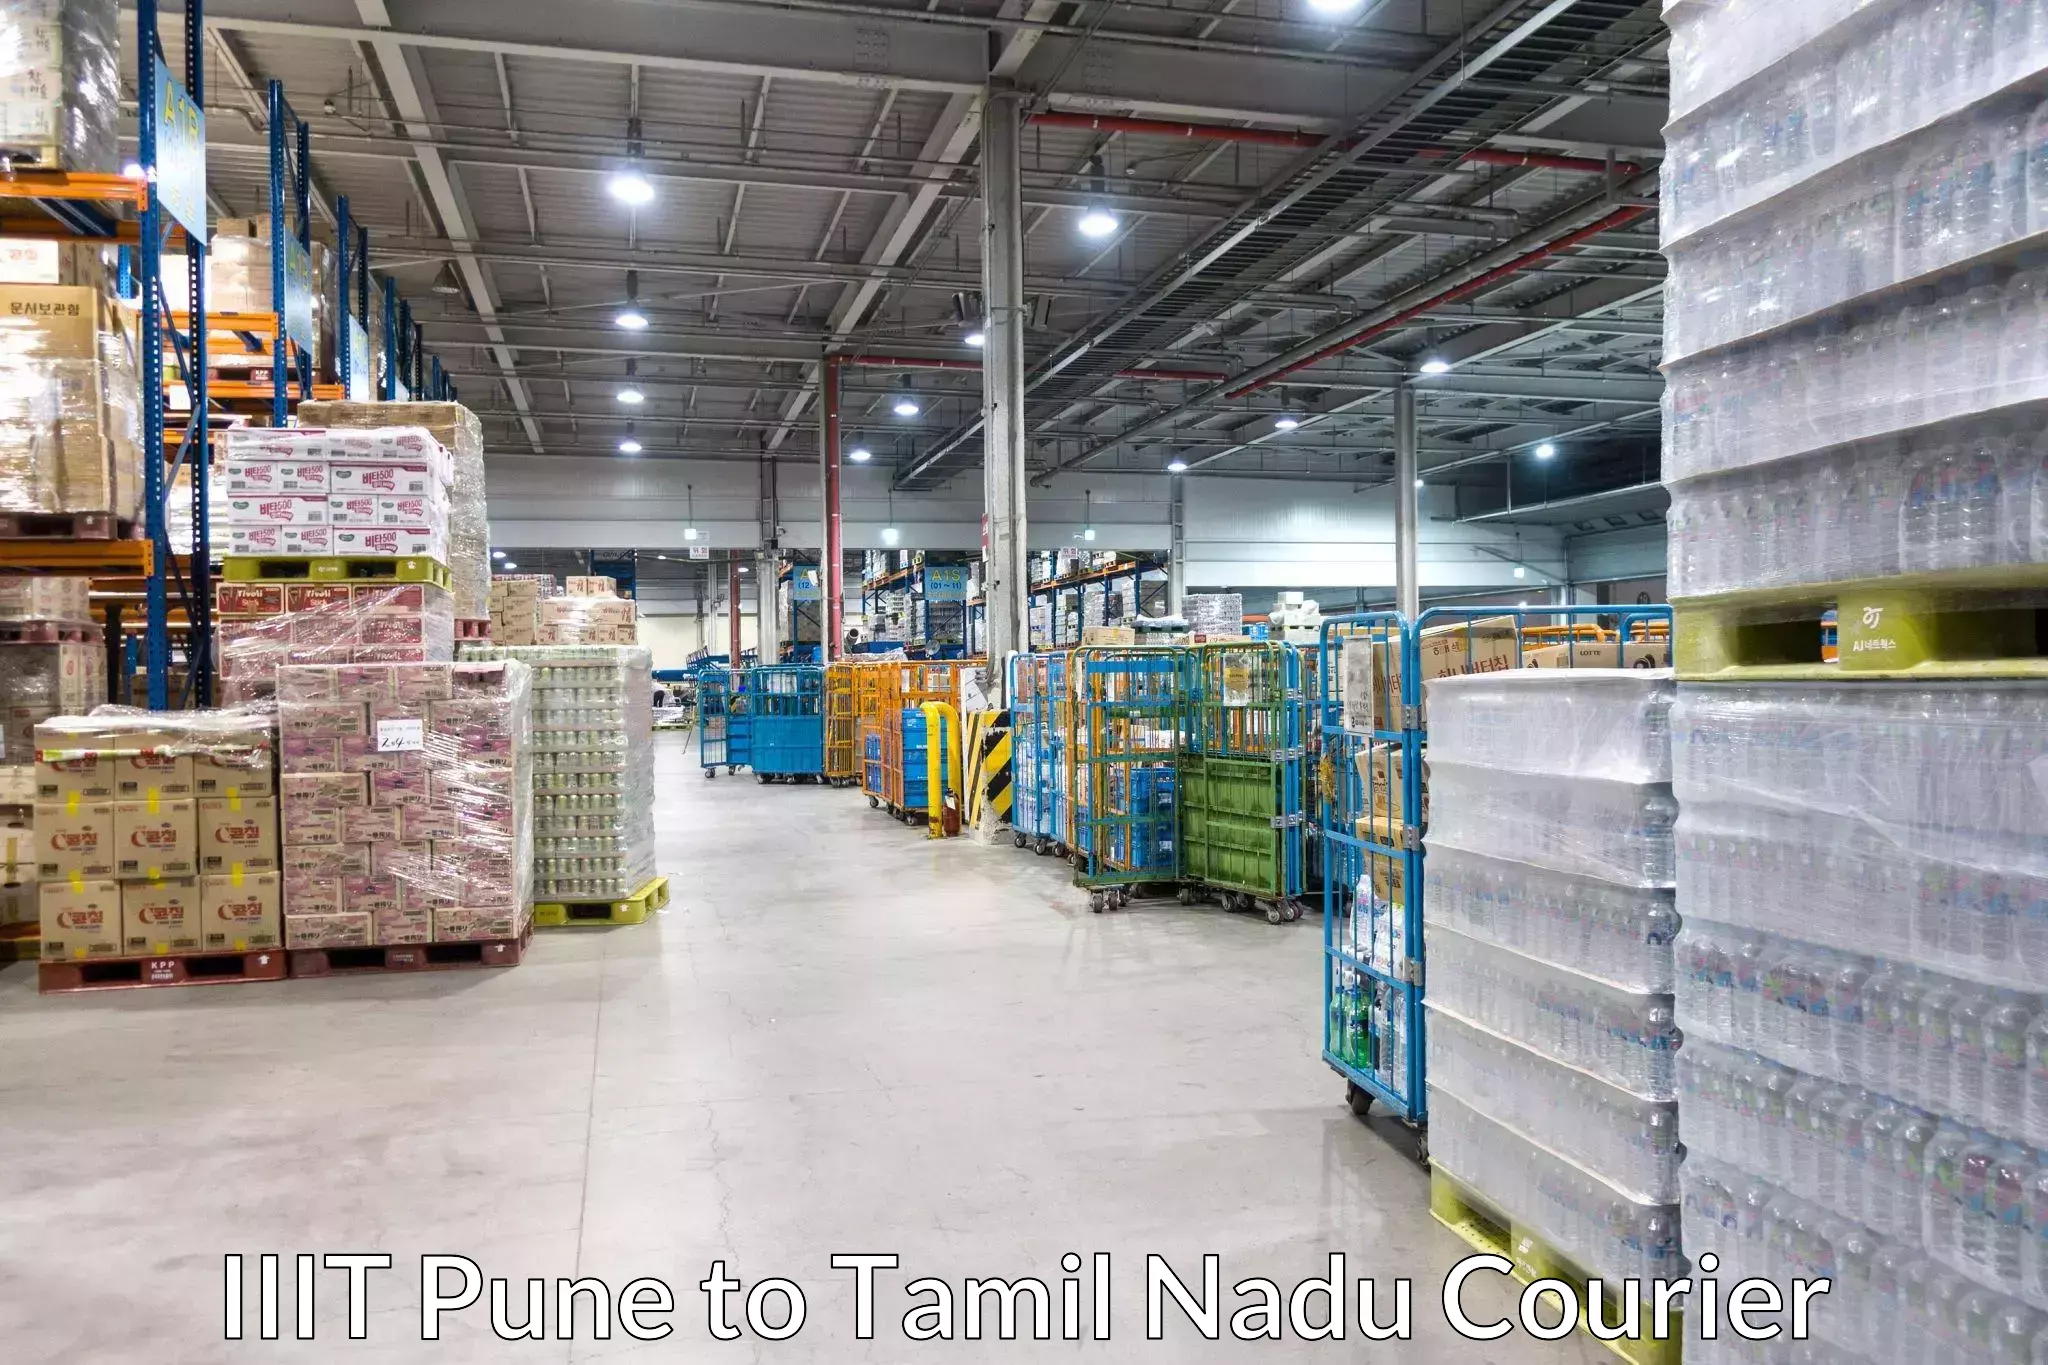 Comprehensive shipping network IIIT Pune to IIIT Tiruchirappalli